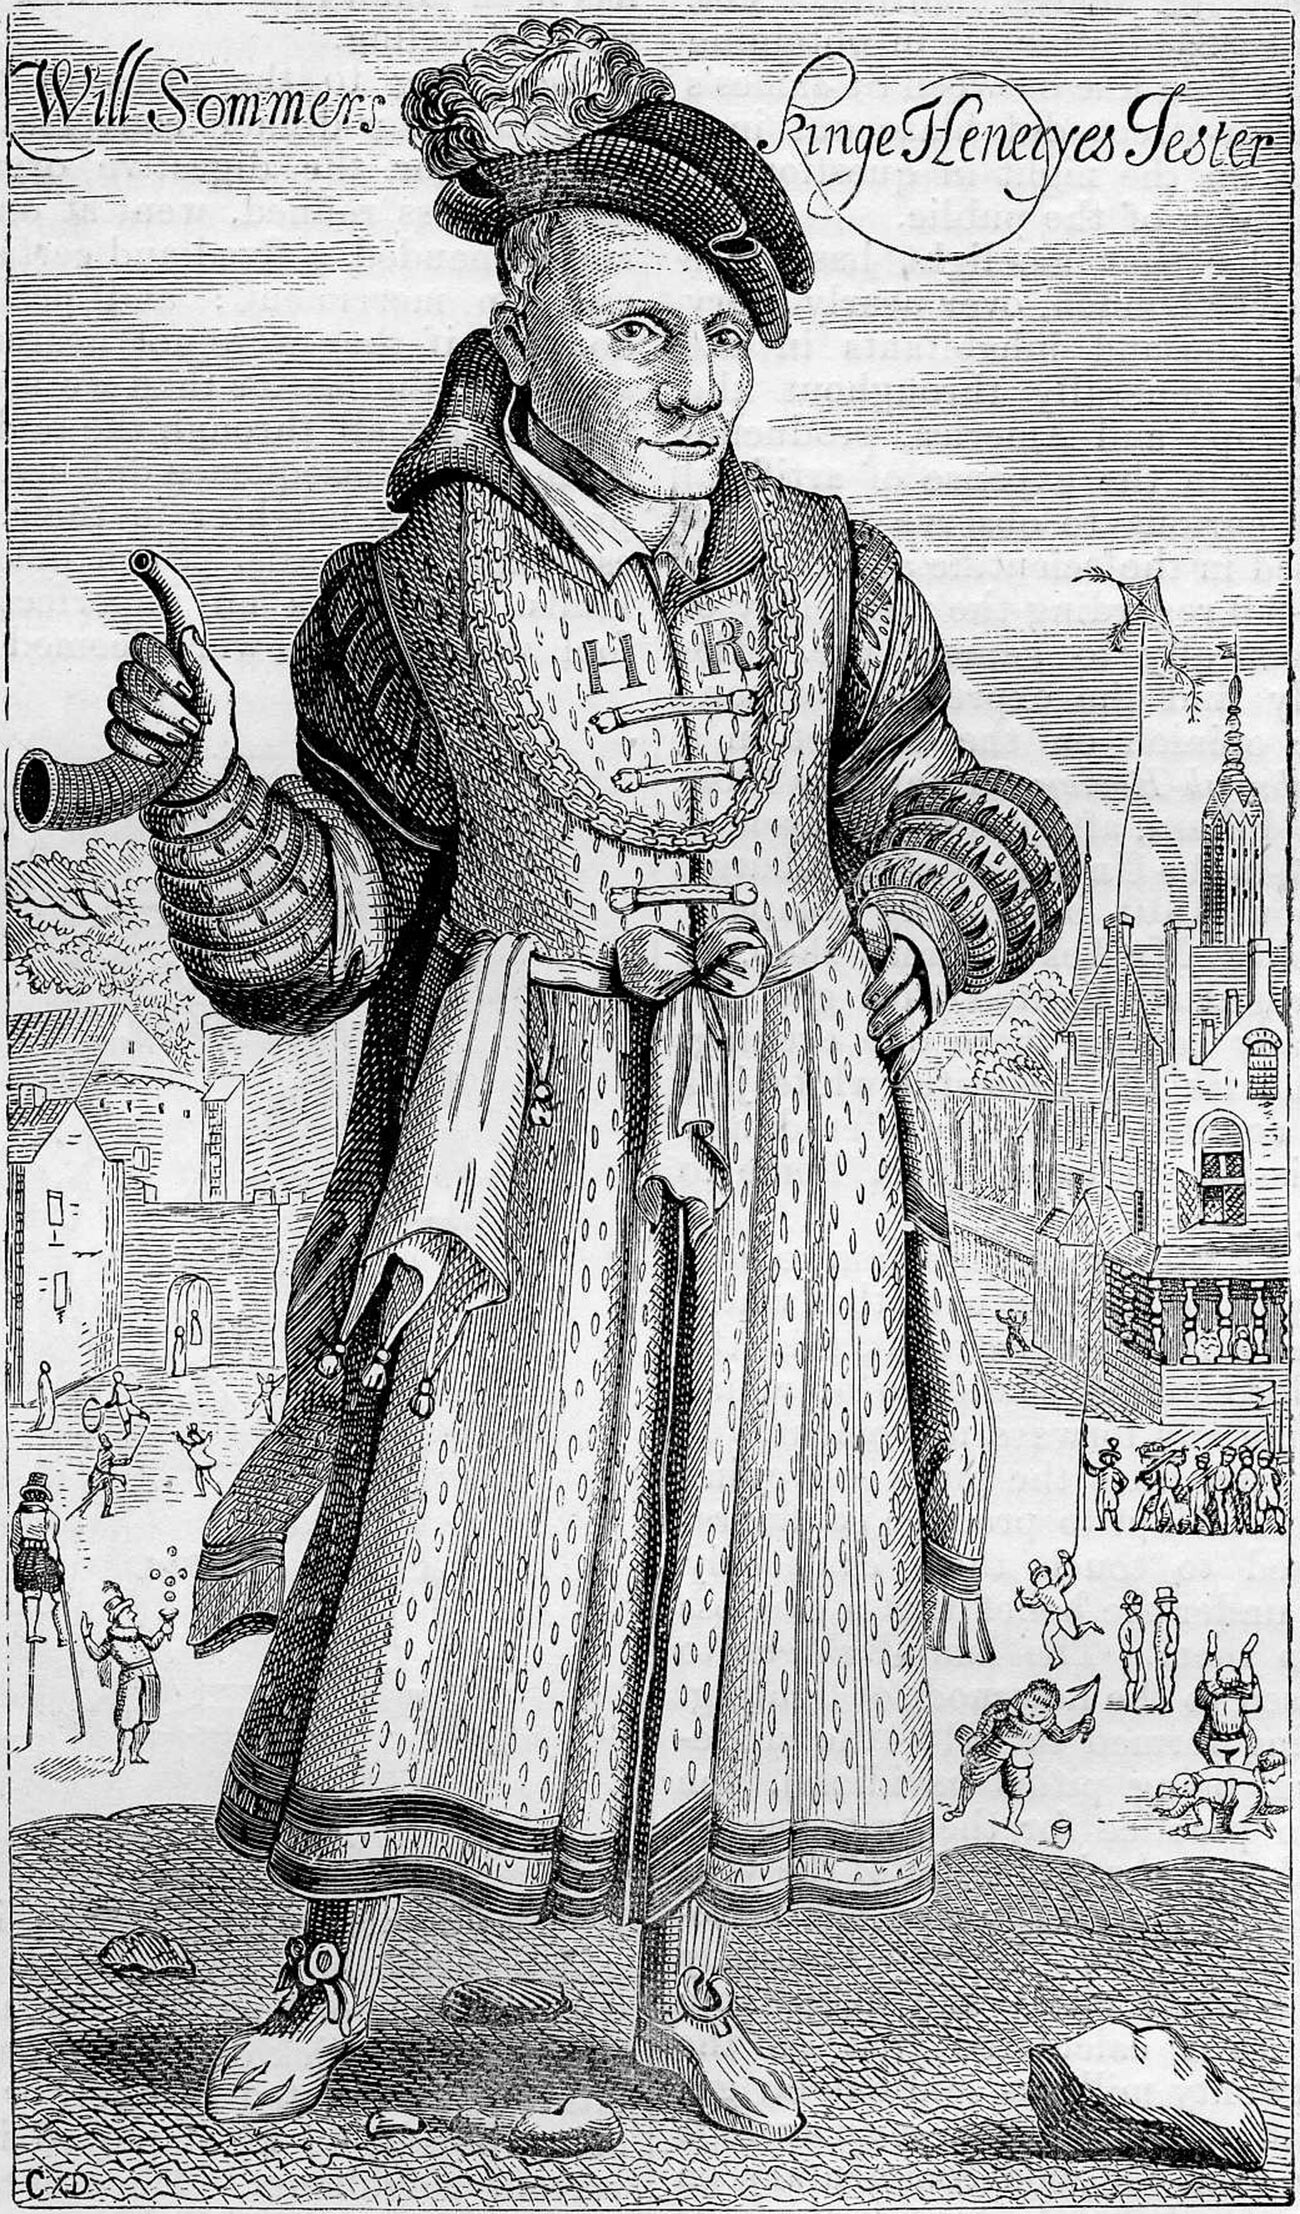 Портрет шута Уилла Соммерса, гравюра Френсиса Деларама.